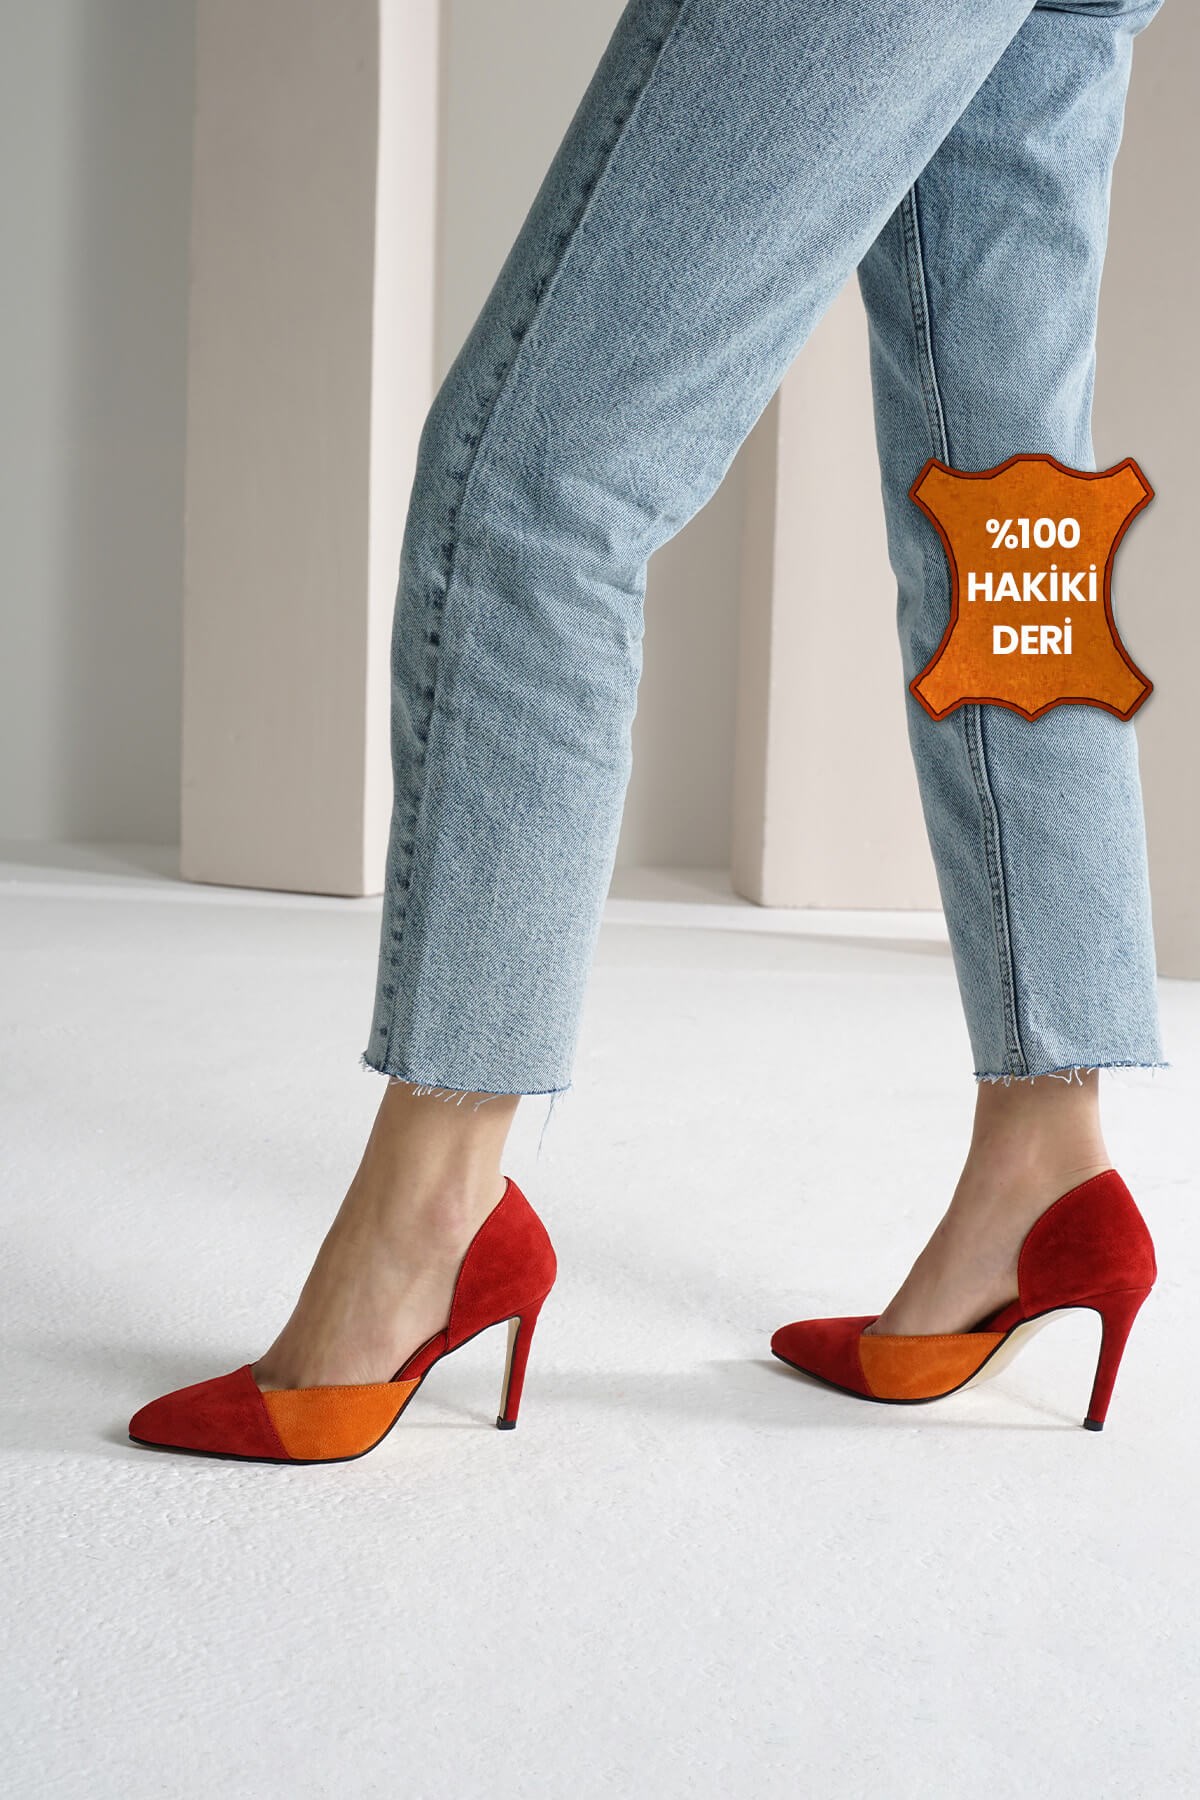 Mio Gusto Hakiki Süet Kırmızı Turuncu İki Renkli Stiletto Ayakkabı